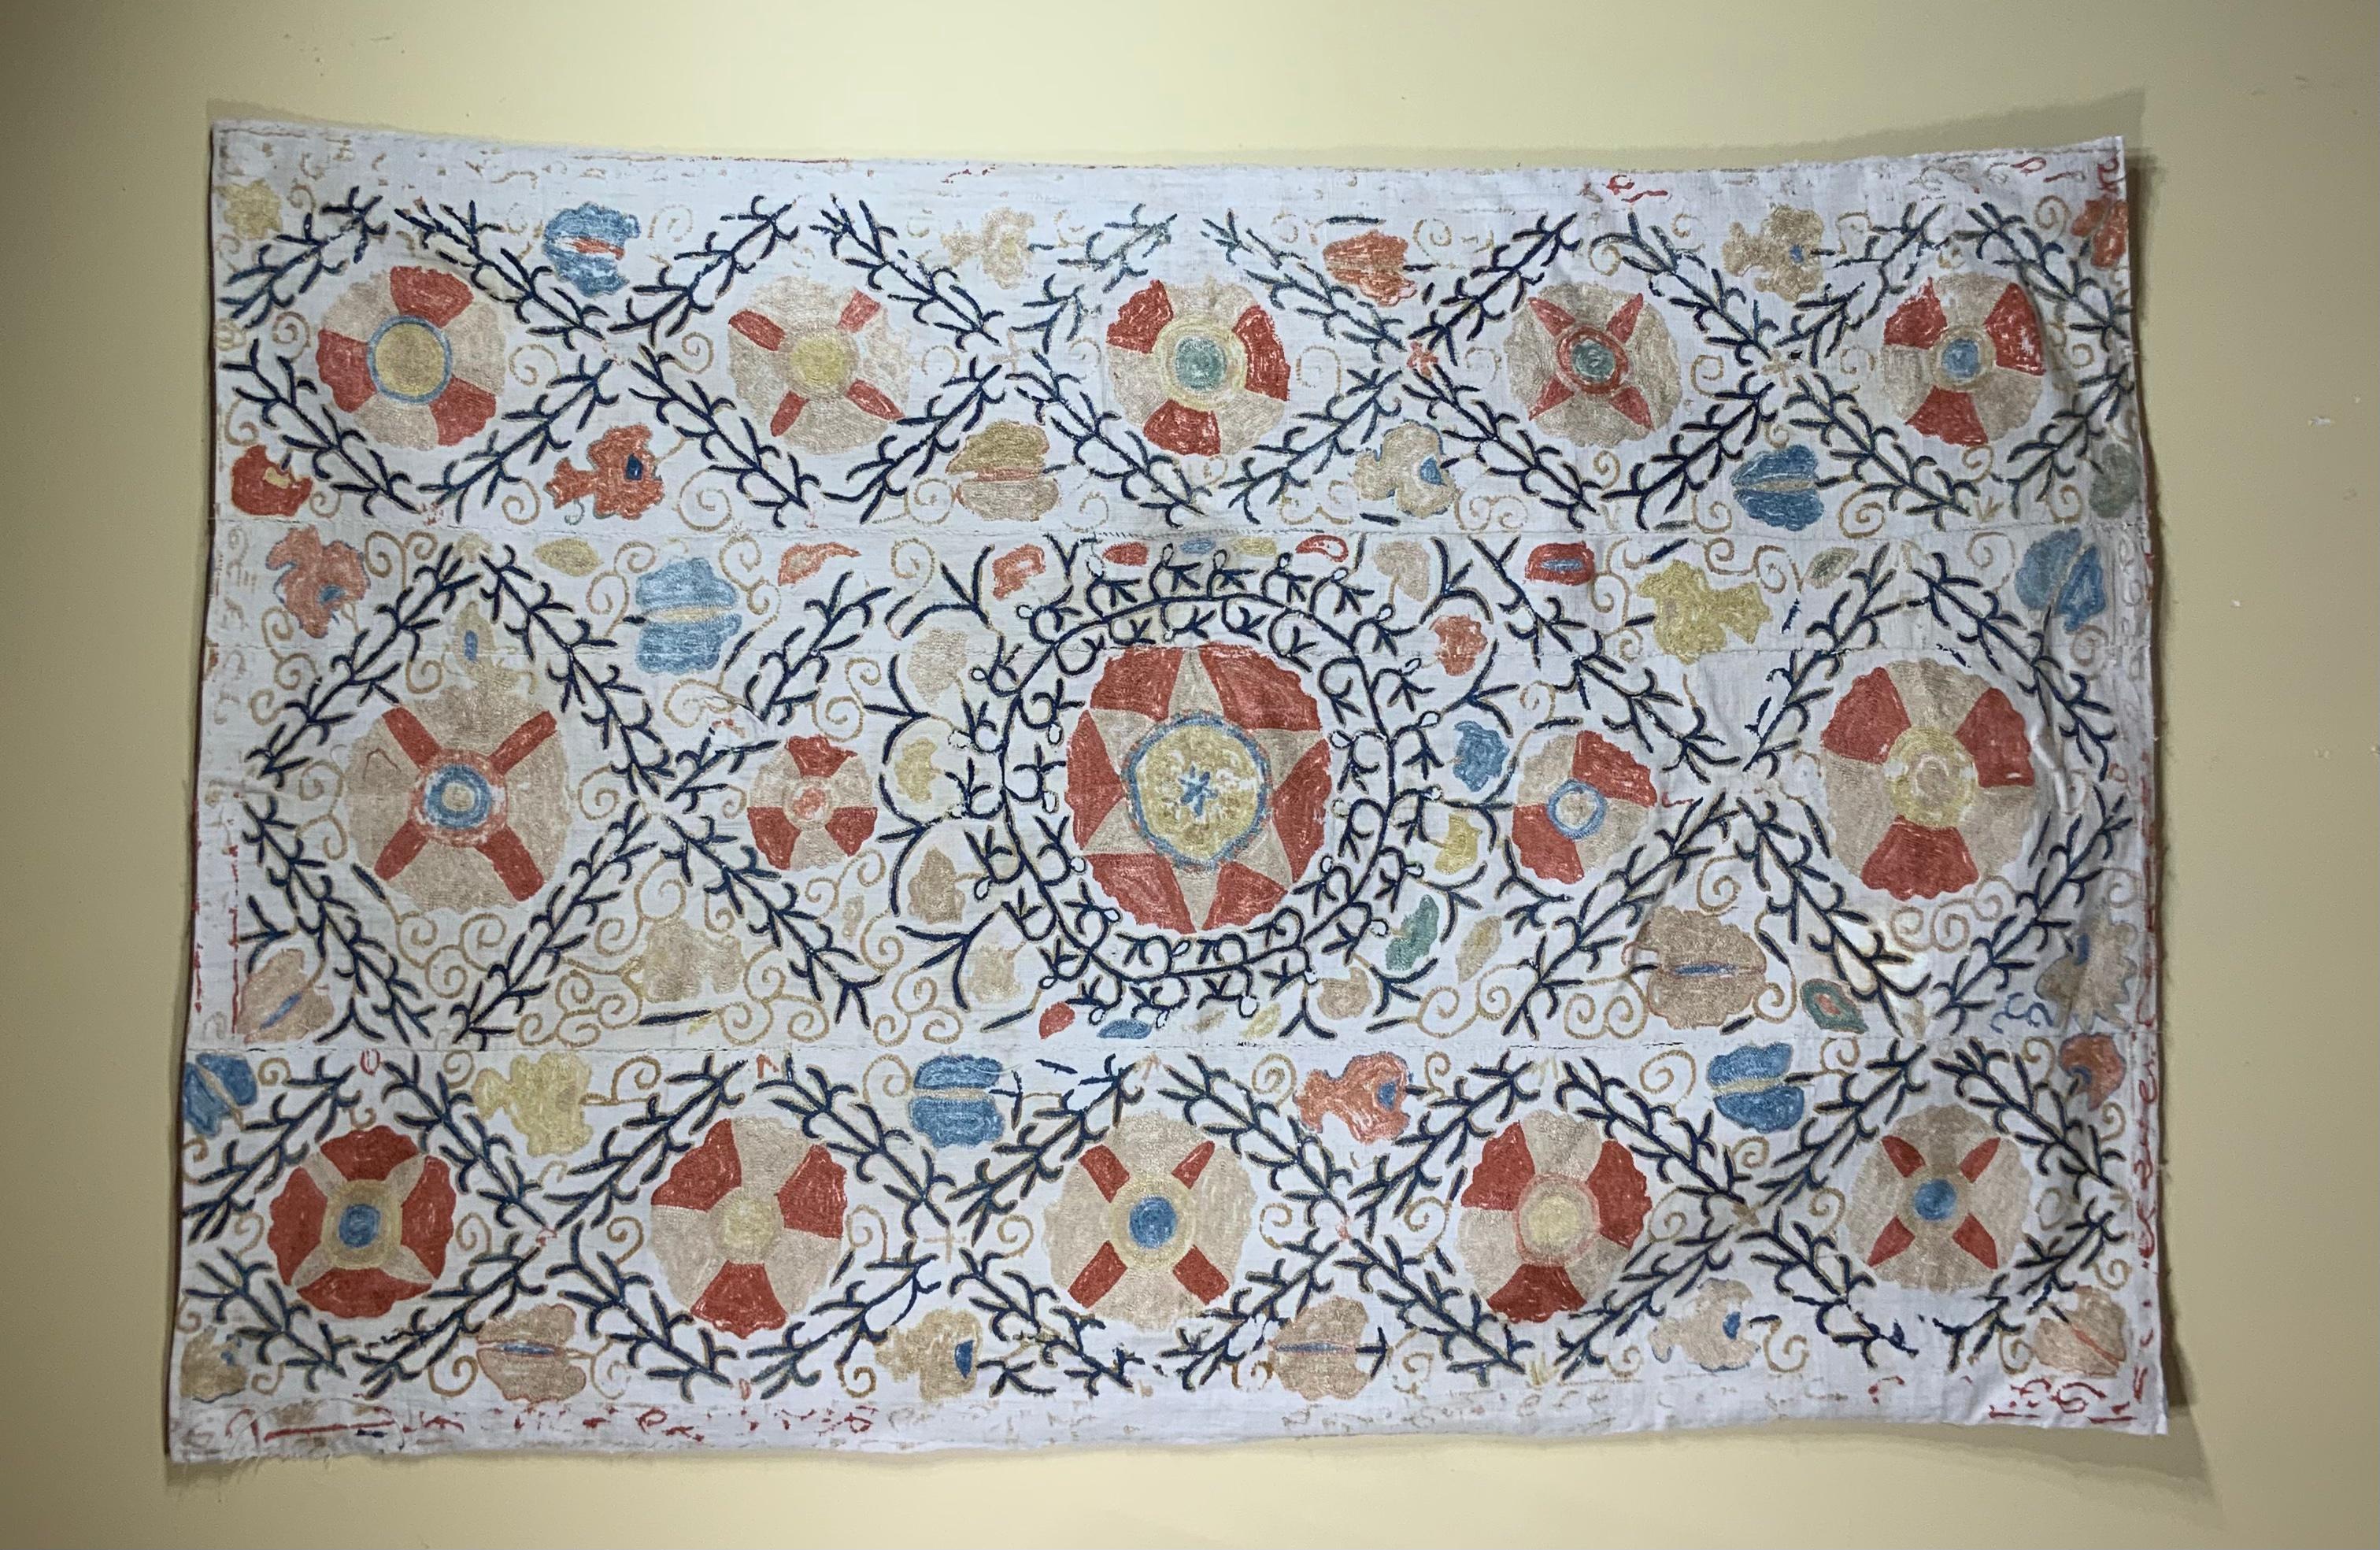 Antikes Suzani-Textil aus handgestickter Seide mit komplizierten Ranken- und Blumenmotiven auf einem handgewebten Baumwollgrund. Professionell gereinigt und restauriert, mit feinem Baumwollstoff hinterlegt.
Kann als Wandbehang oder auf einem Tisch